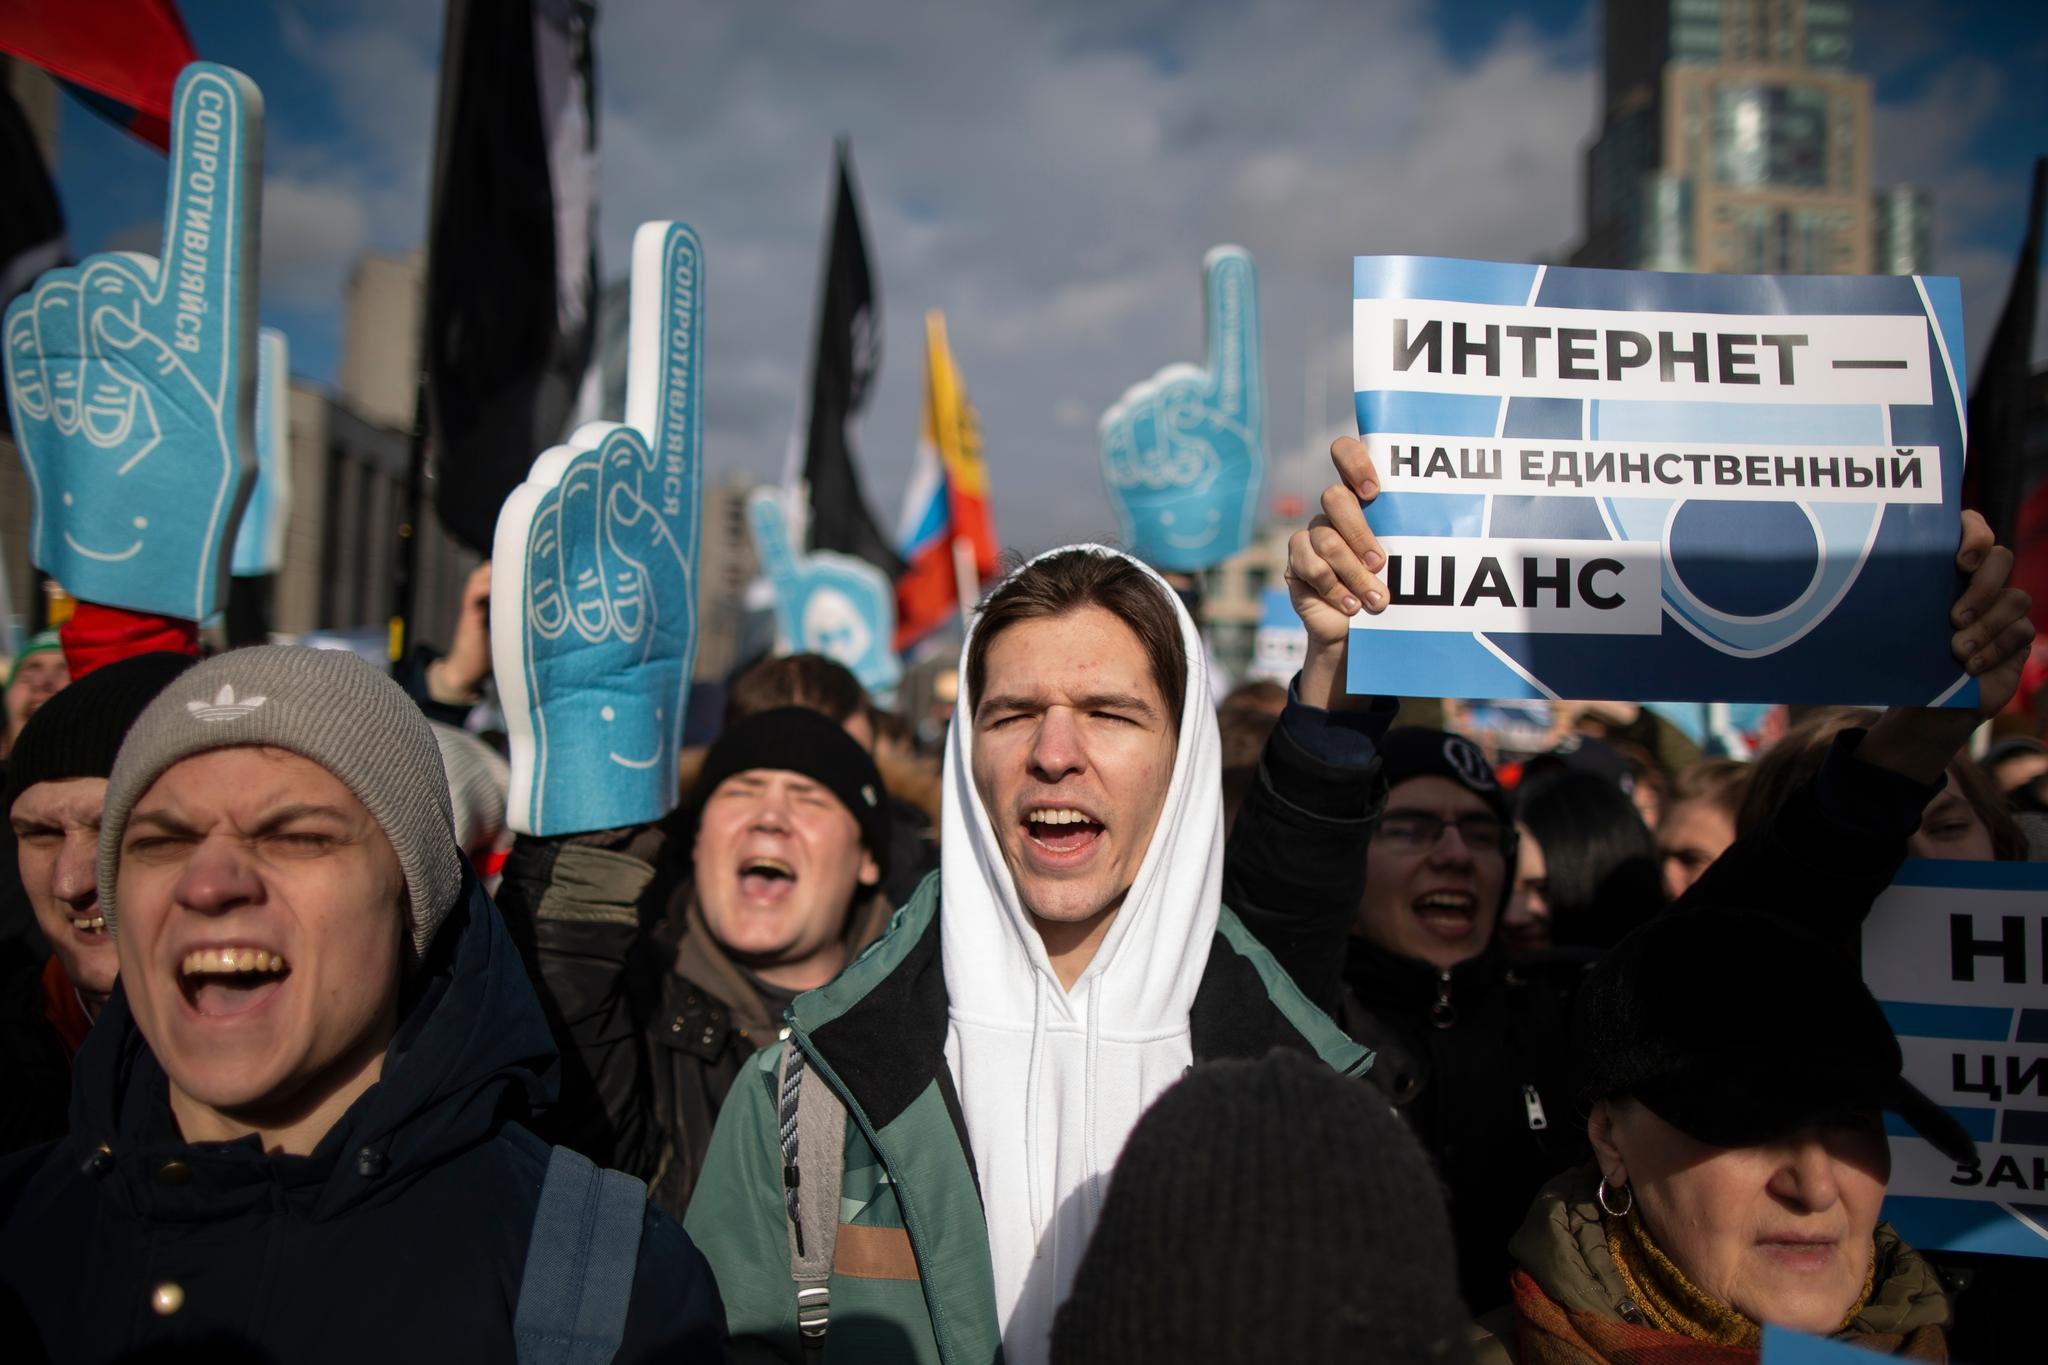 Tusenvis av demonstranter møtte opp i Moskva forrige måned for å protestere mot det de mener er innskrenkingen av ytringsfriheten på internett.